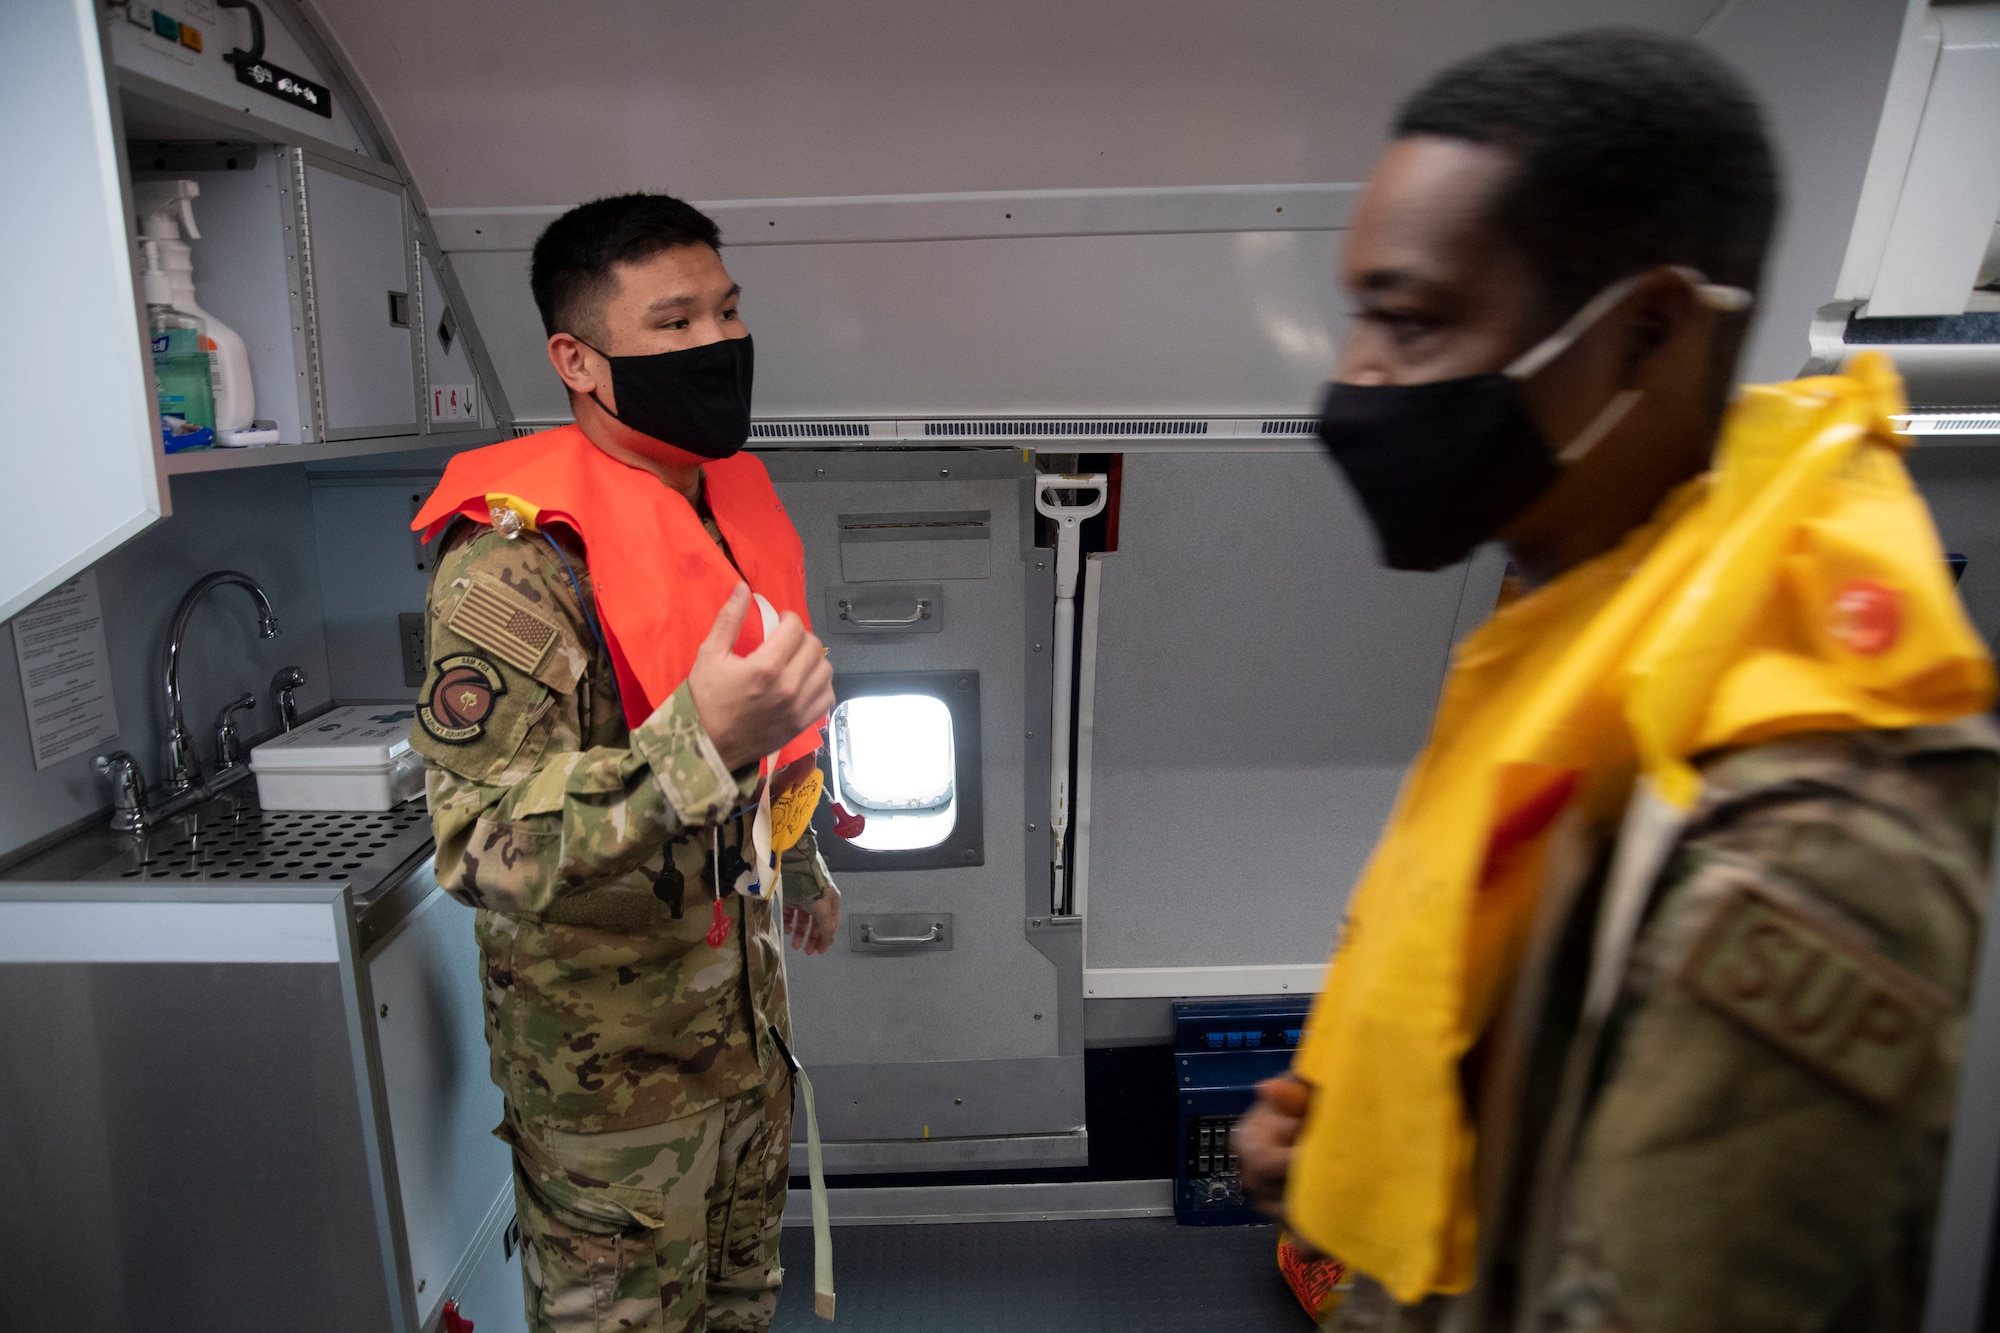 Emergency evacuation exercise simulation on plane